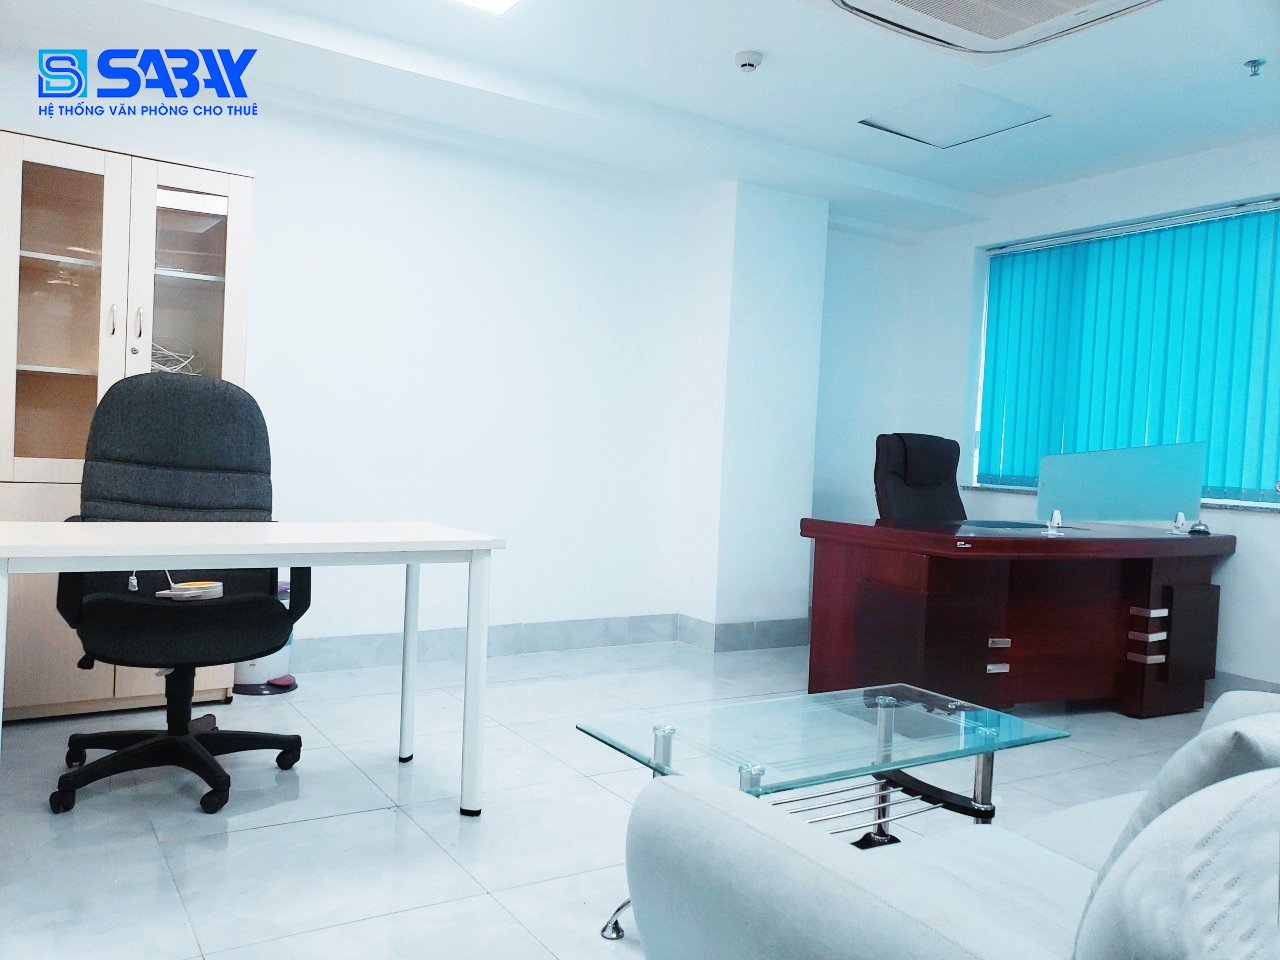 Dịch vụ cho thuê văn phòng trọn gói từ Sabay Office